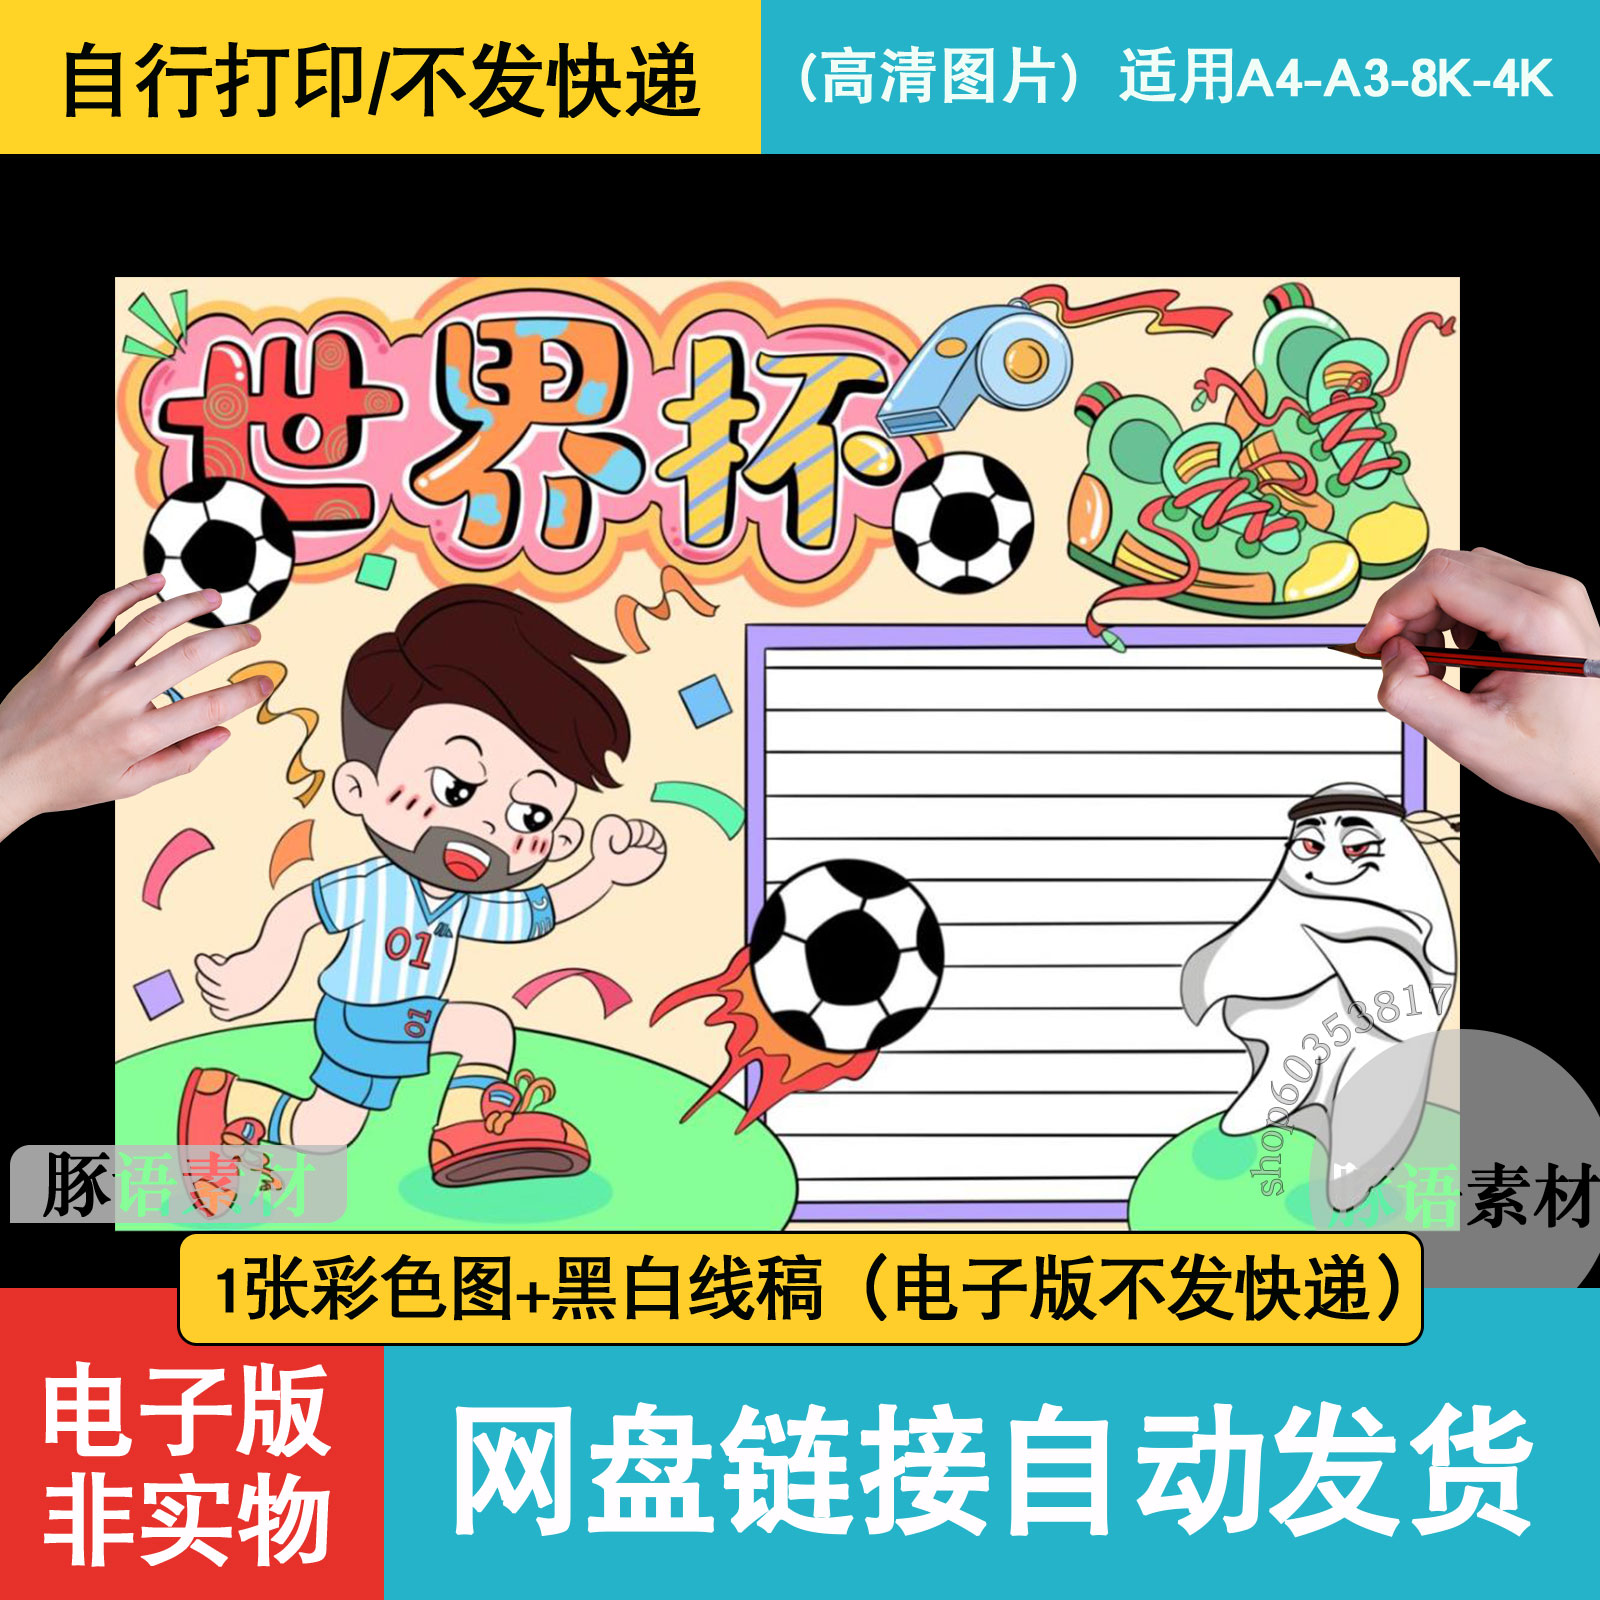 世界杯我爱运动手抄报足球全民体育运动小学生儿童绘画素材小报